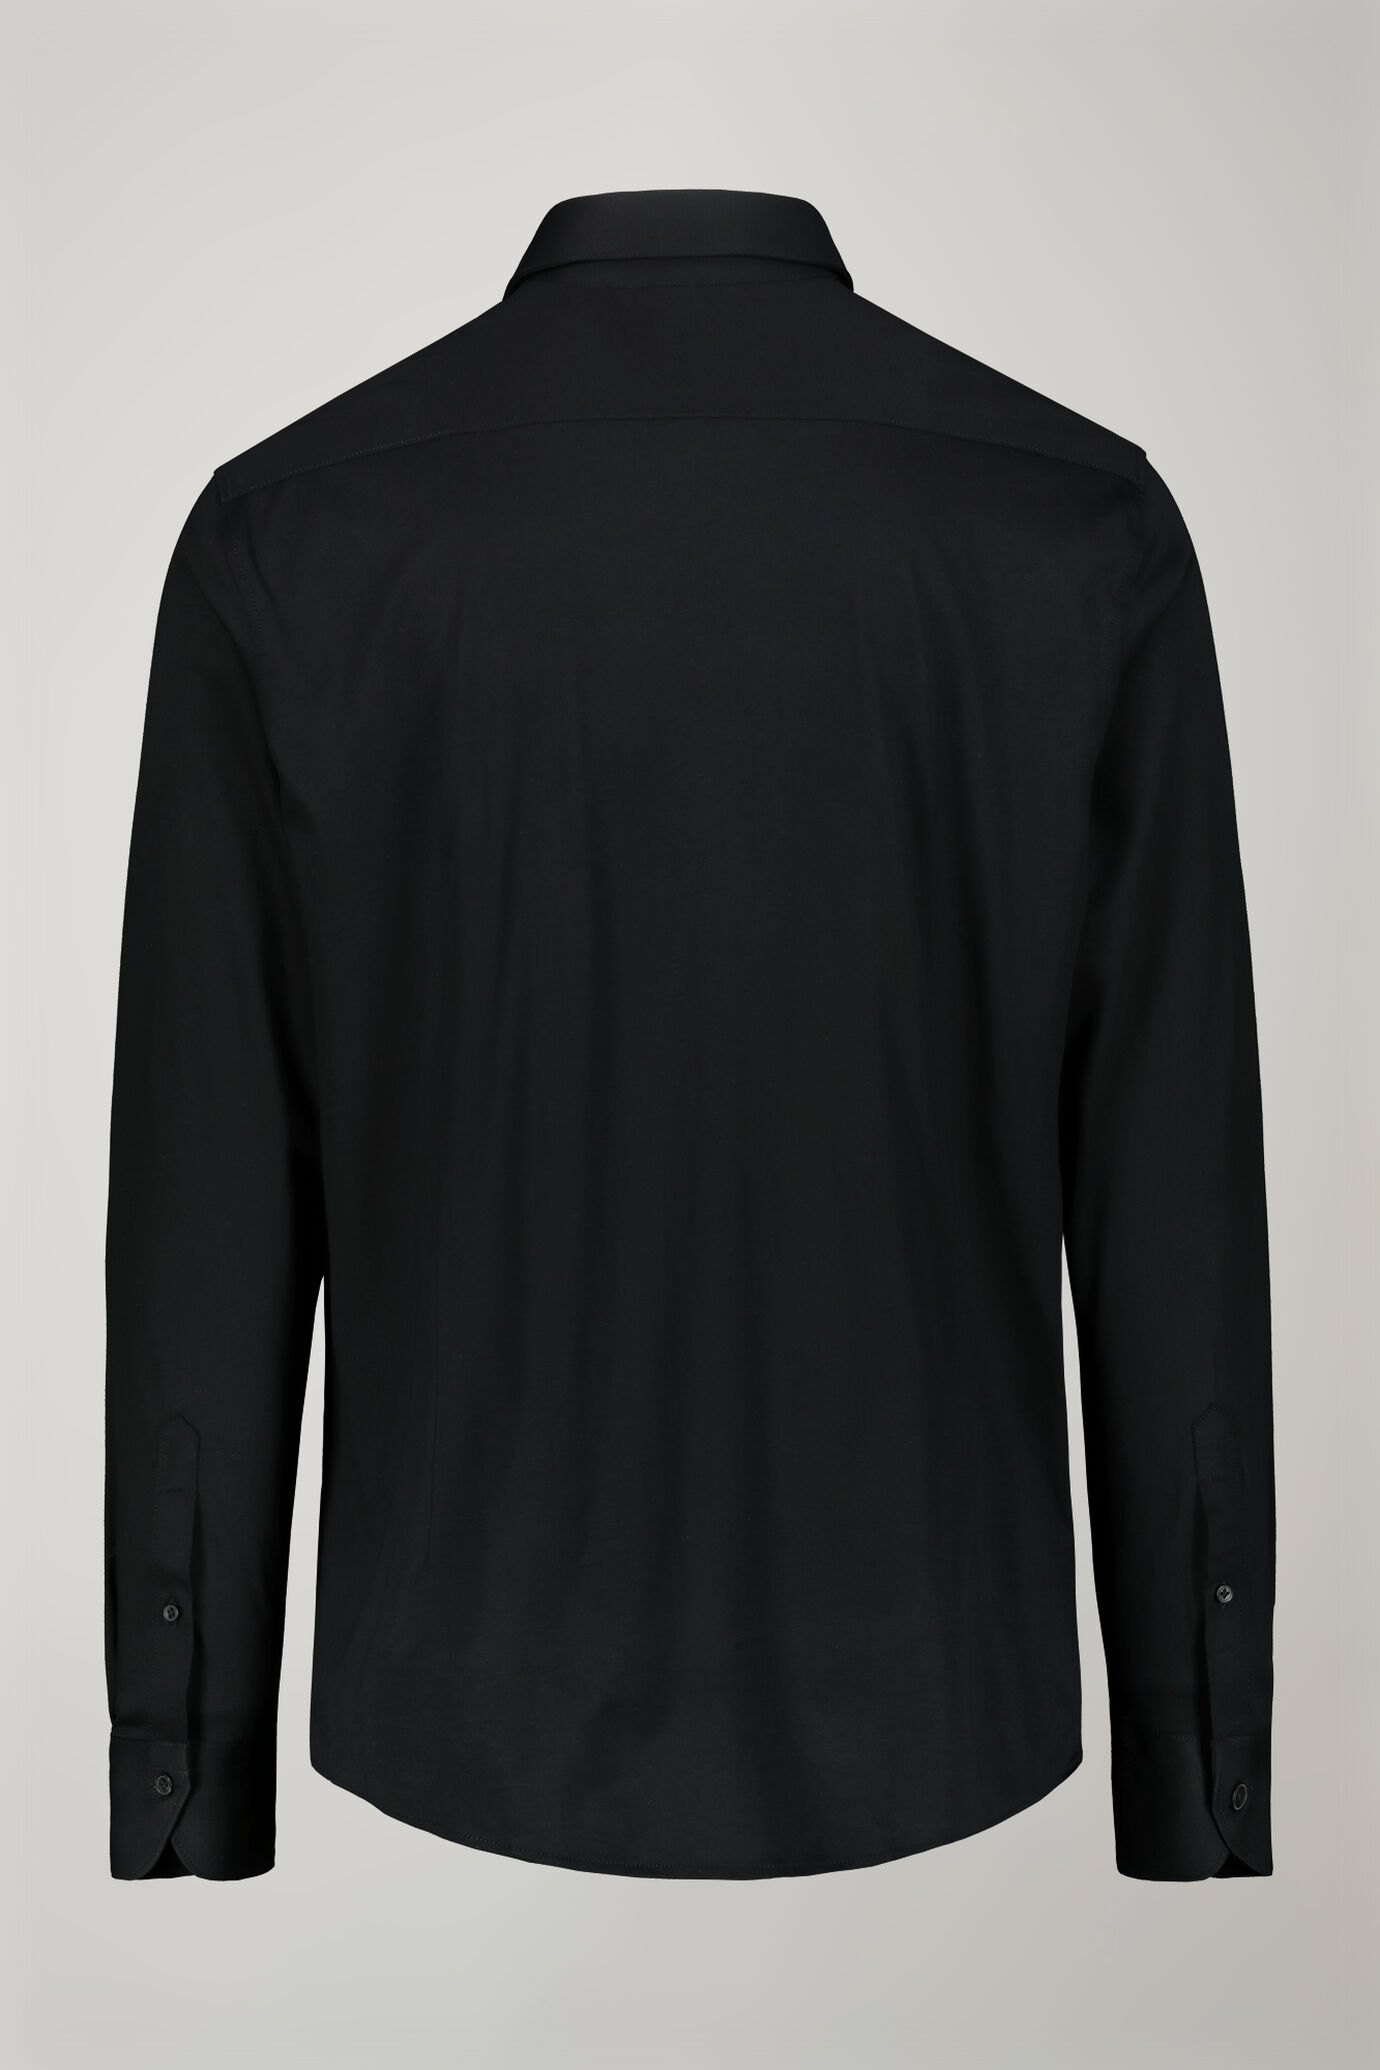 Polo camicia uomo a manica lunga con collo classico 100% cotone piquet regular fit image number 6